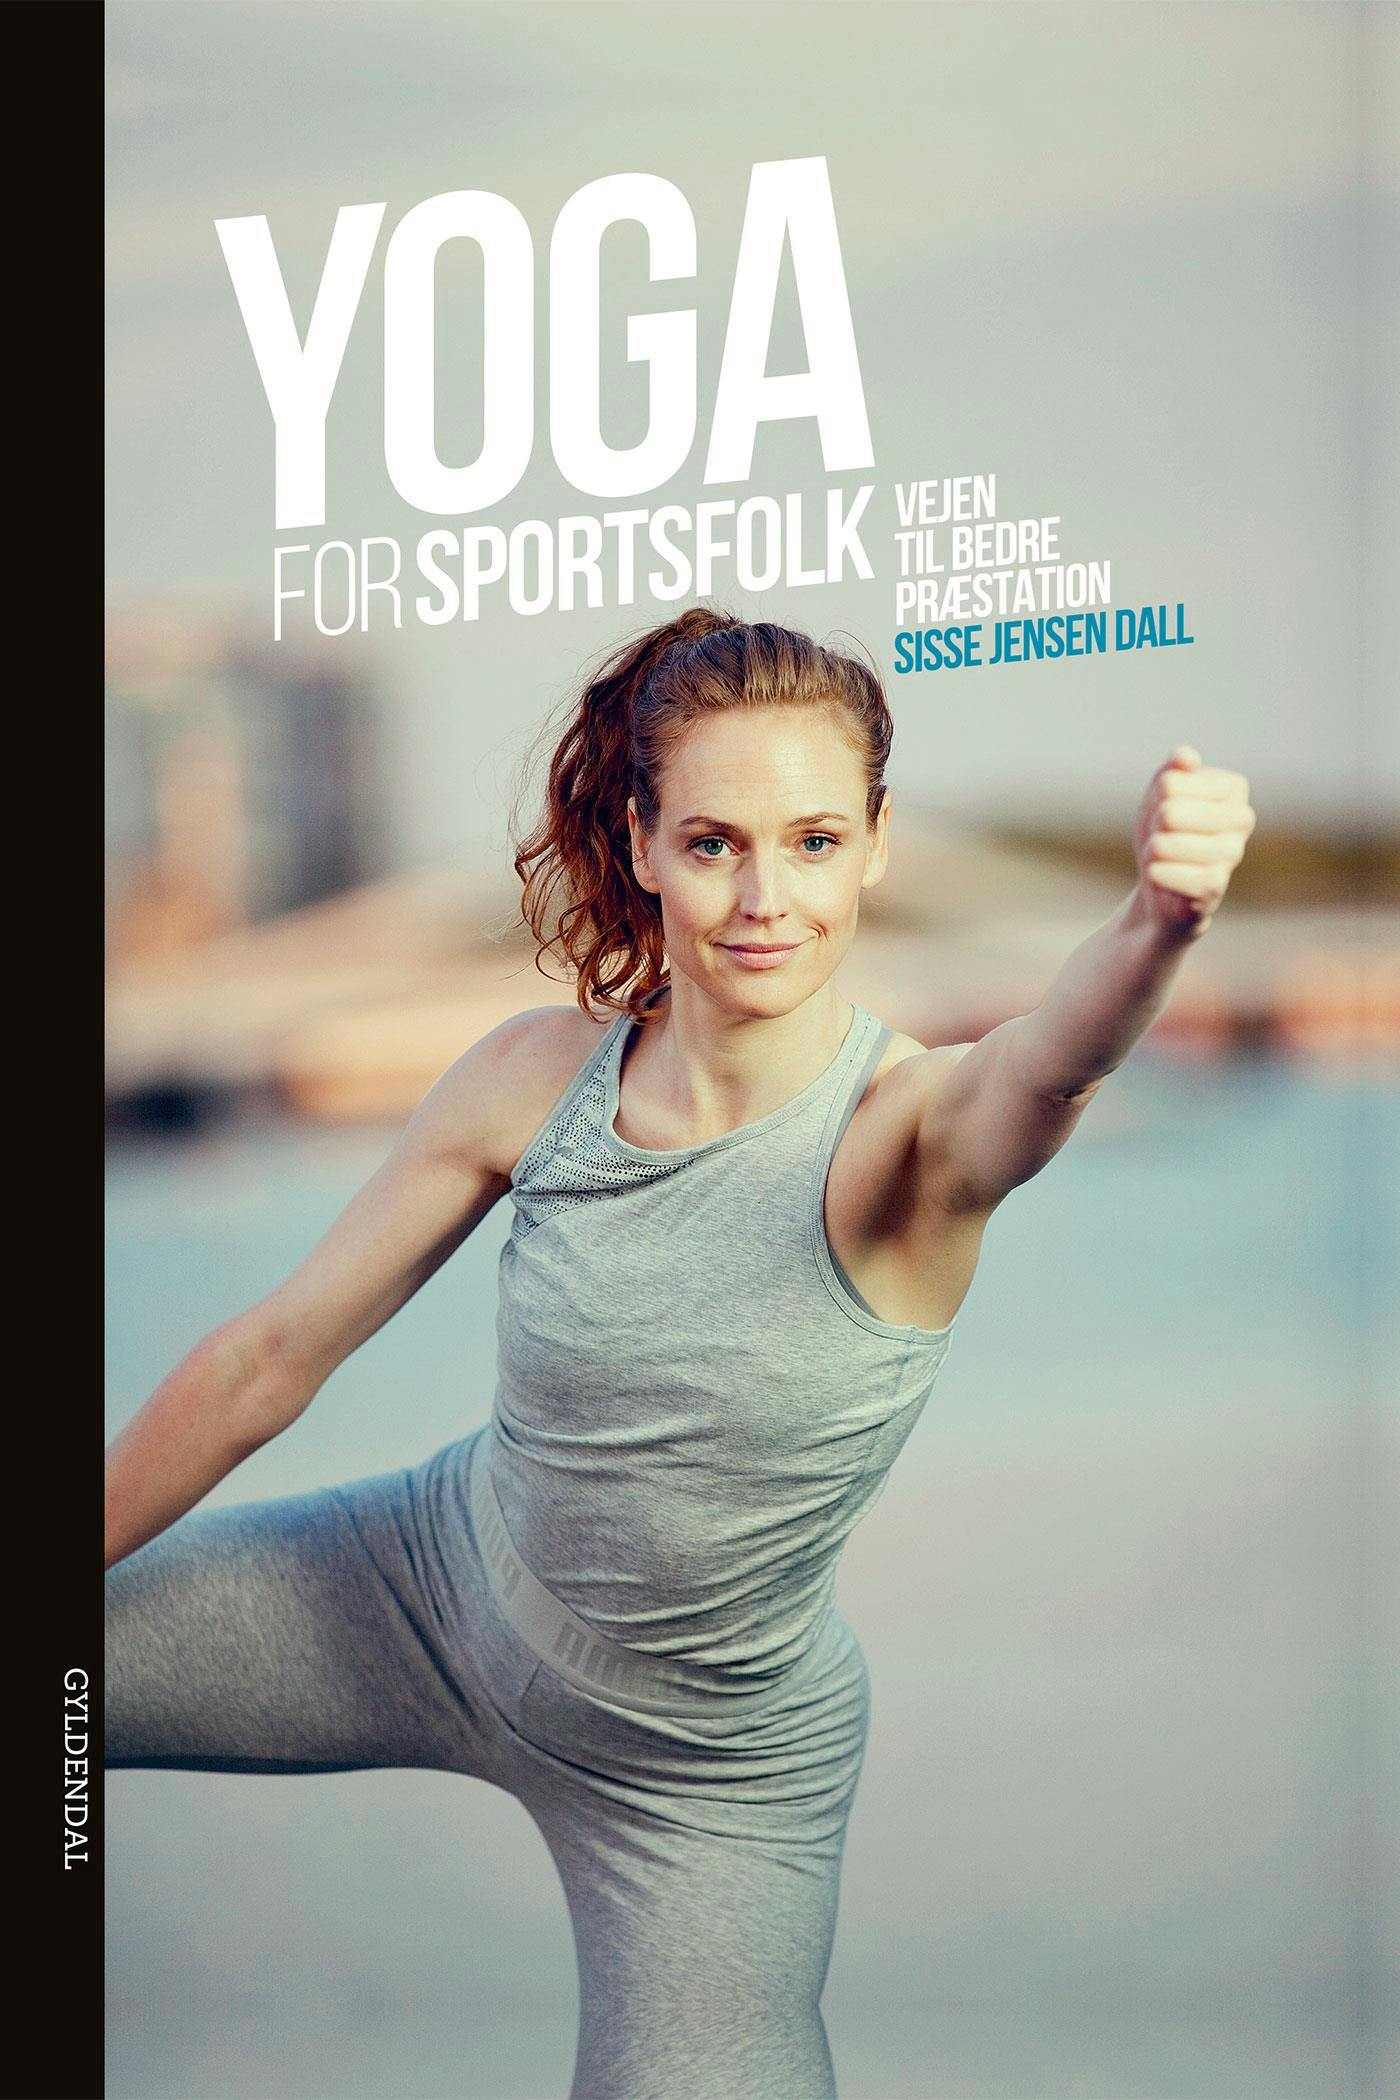 Yoga for sportsfolk: Vejen til bedre præstation - Sisse Jensen Dall